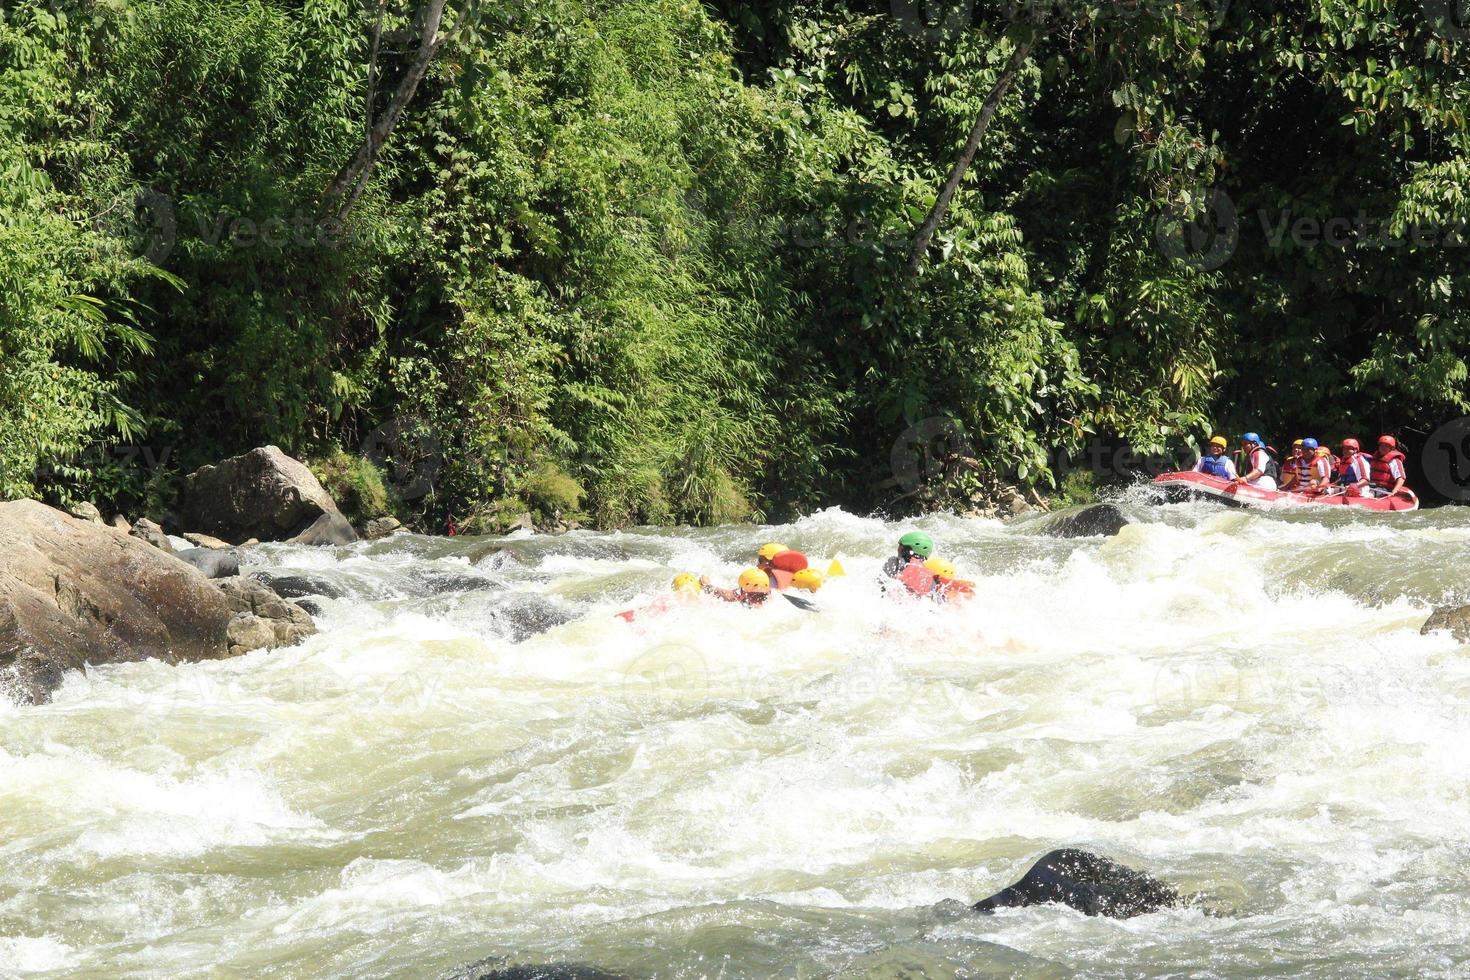 Foto von Rafting-Aktivitäten einer Gruppe von Menschen auf einem felsigen Fluss mit starker Strömung